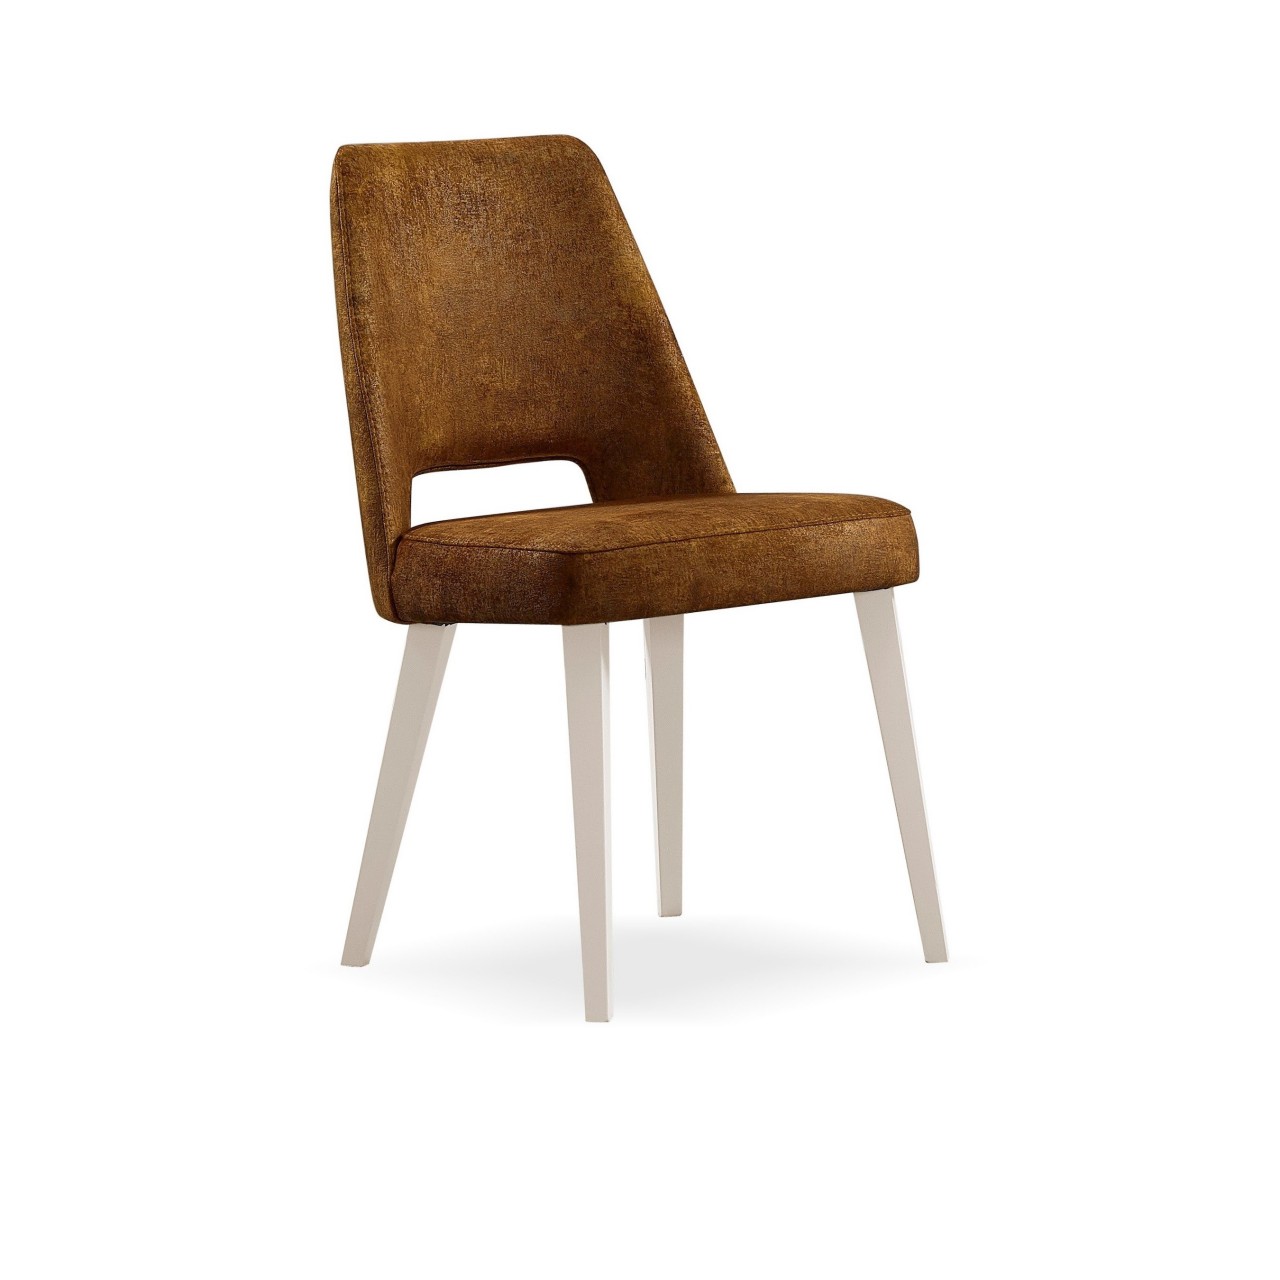 Tecnologia e estilo unidos na cadeira Luca Mor. Conforto, durabilidade e design moderno para melhorar o seu ambiente.